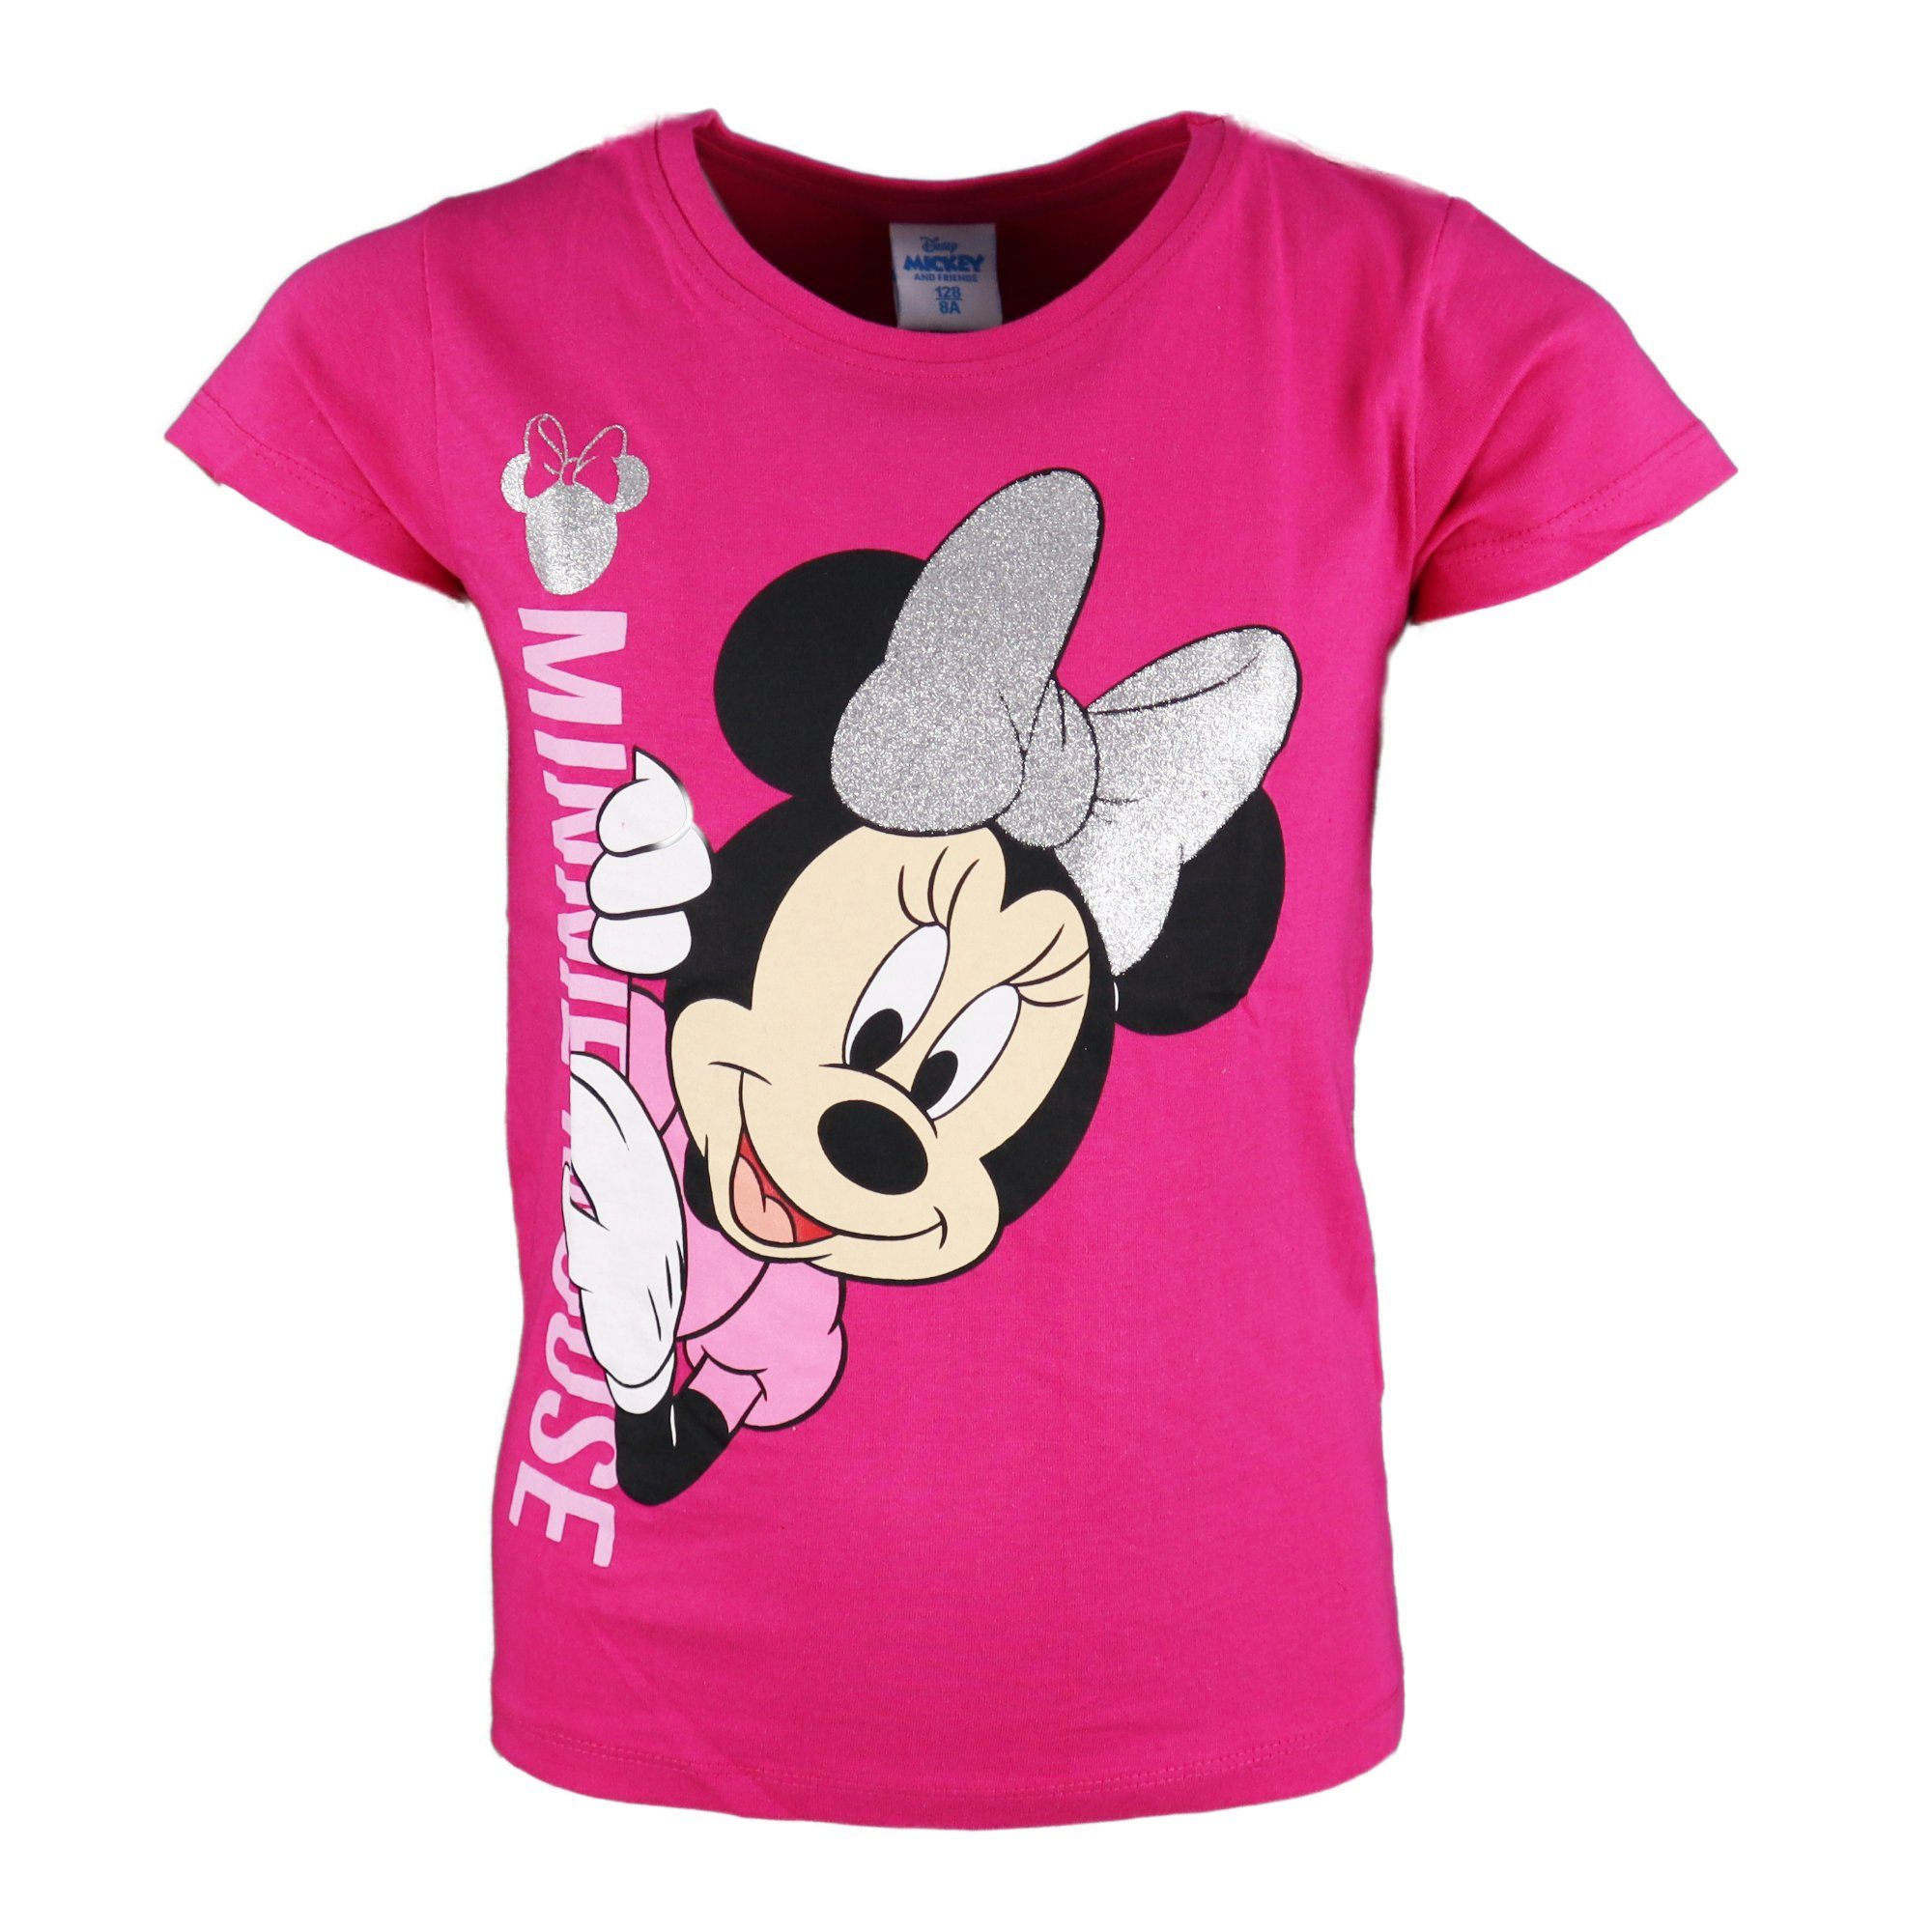 Disney Minnie Mouse T-Shirt Minnie Maus Mädchen Kinder Shirt Gr. 104 bis 134, 100% Baumwolle Pink